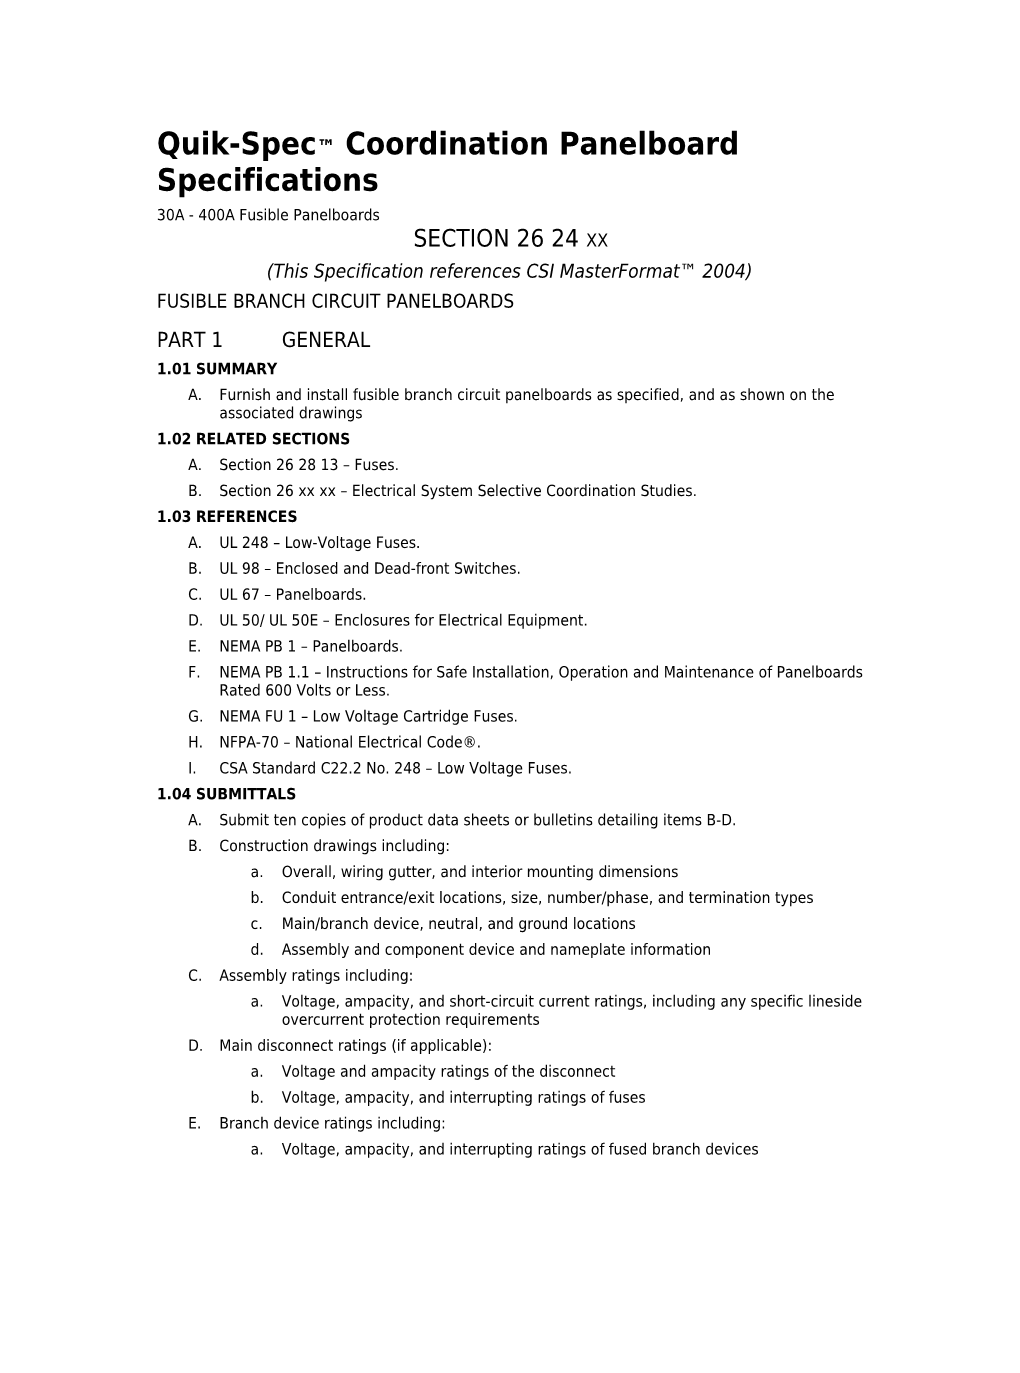 Quik-Spec Coordination Panelboard Specifications